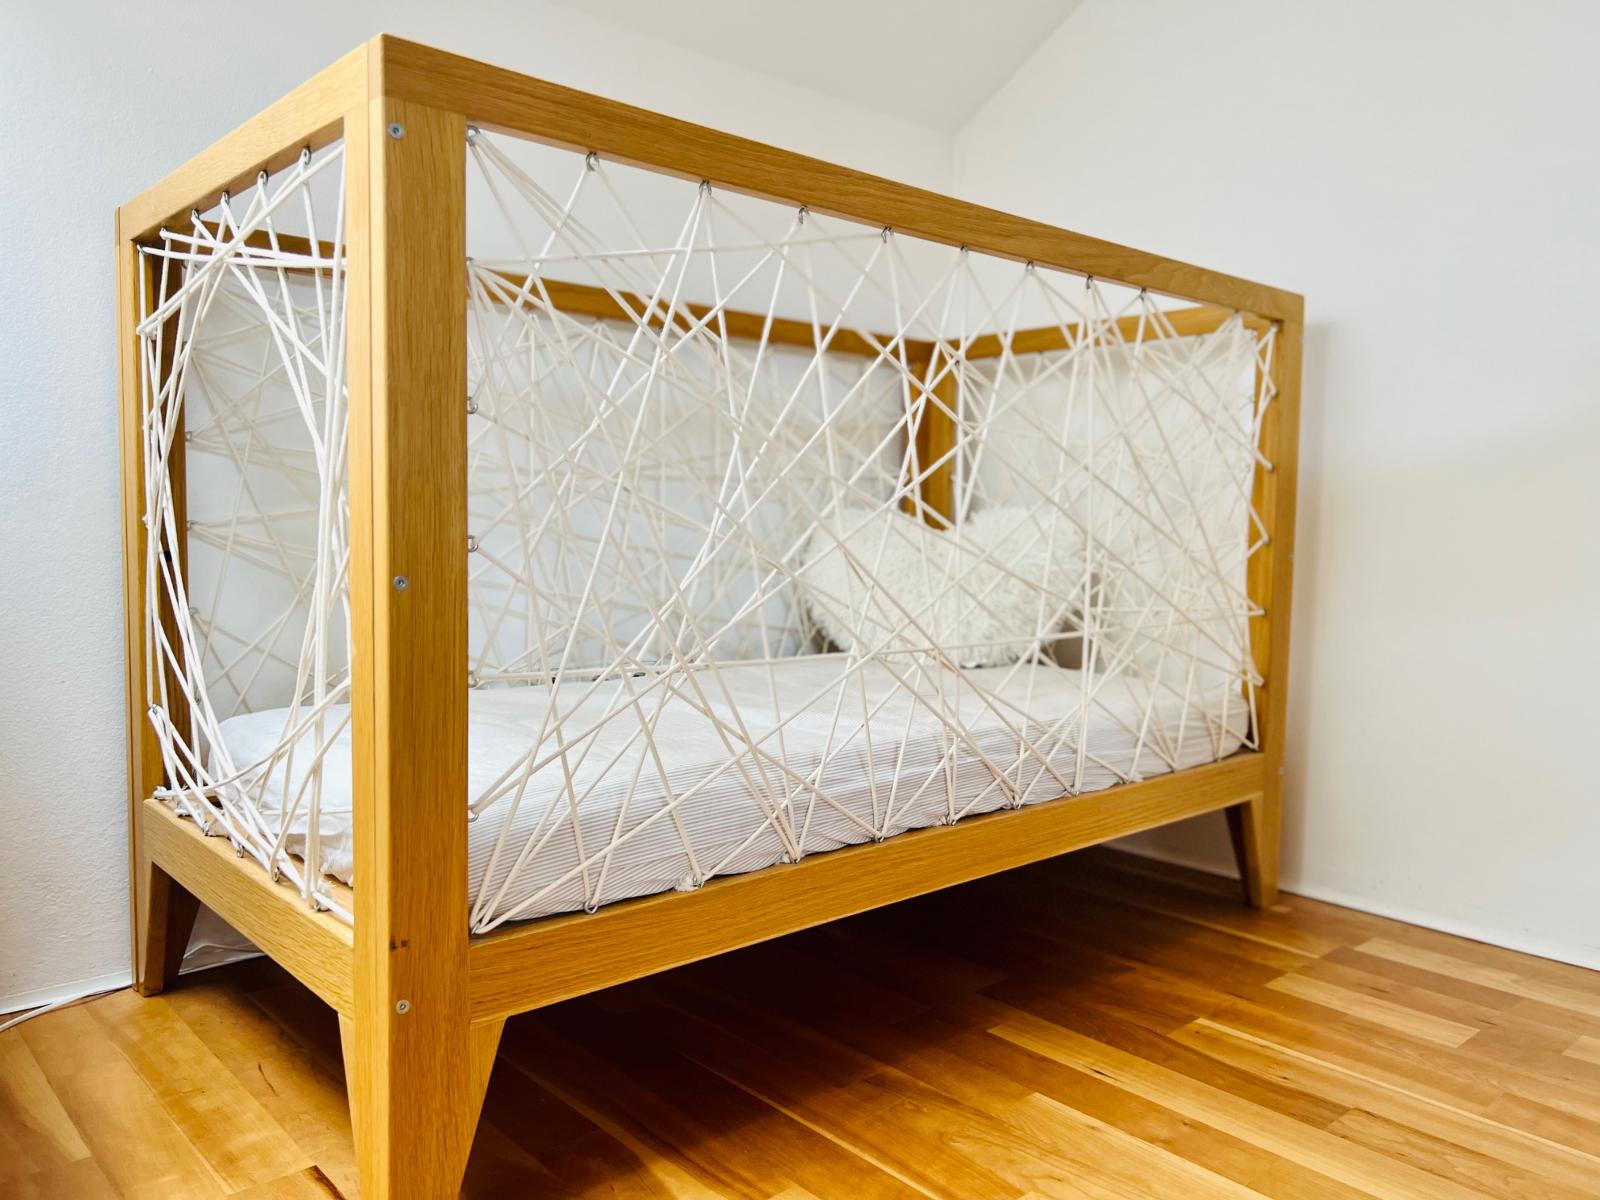 Detská postieľka / ohradka dubova s ​​matracom - Vybavenie pre detskú izbu